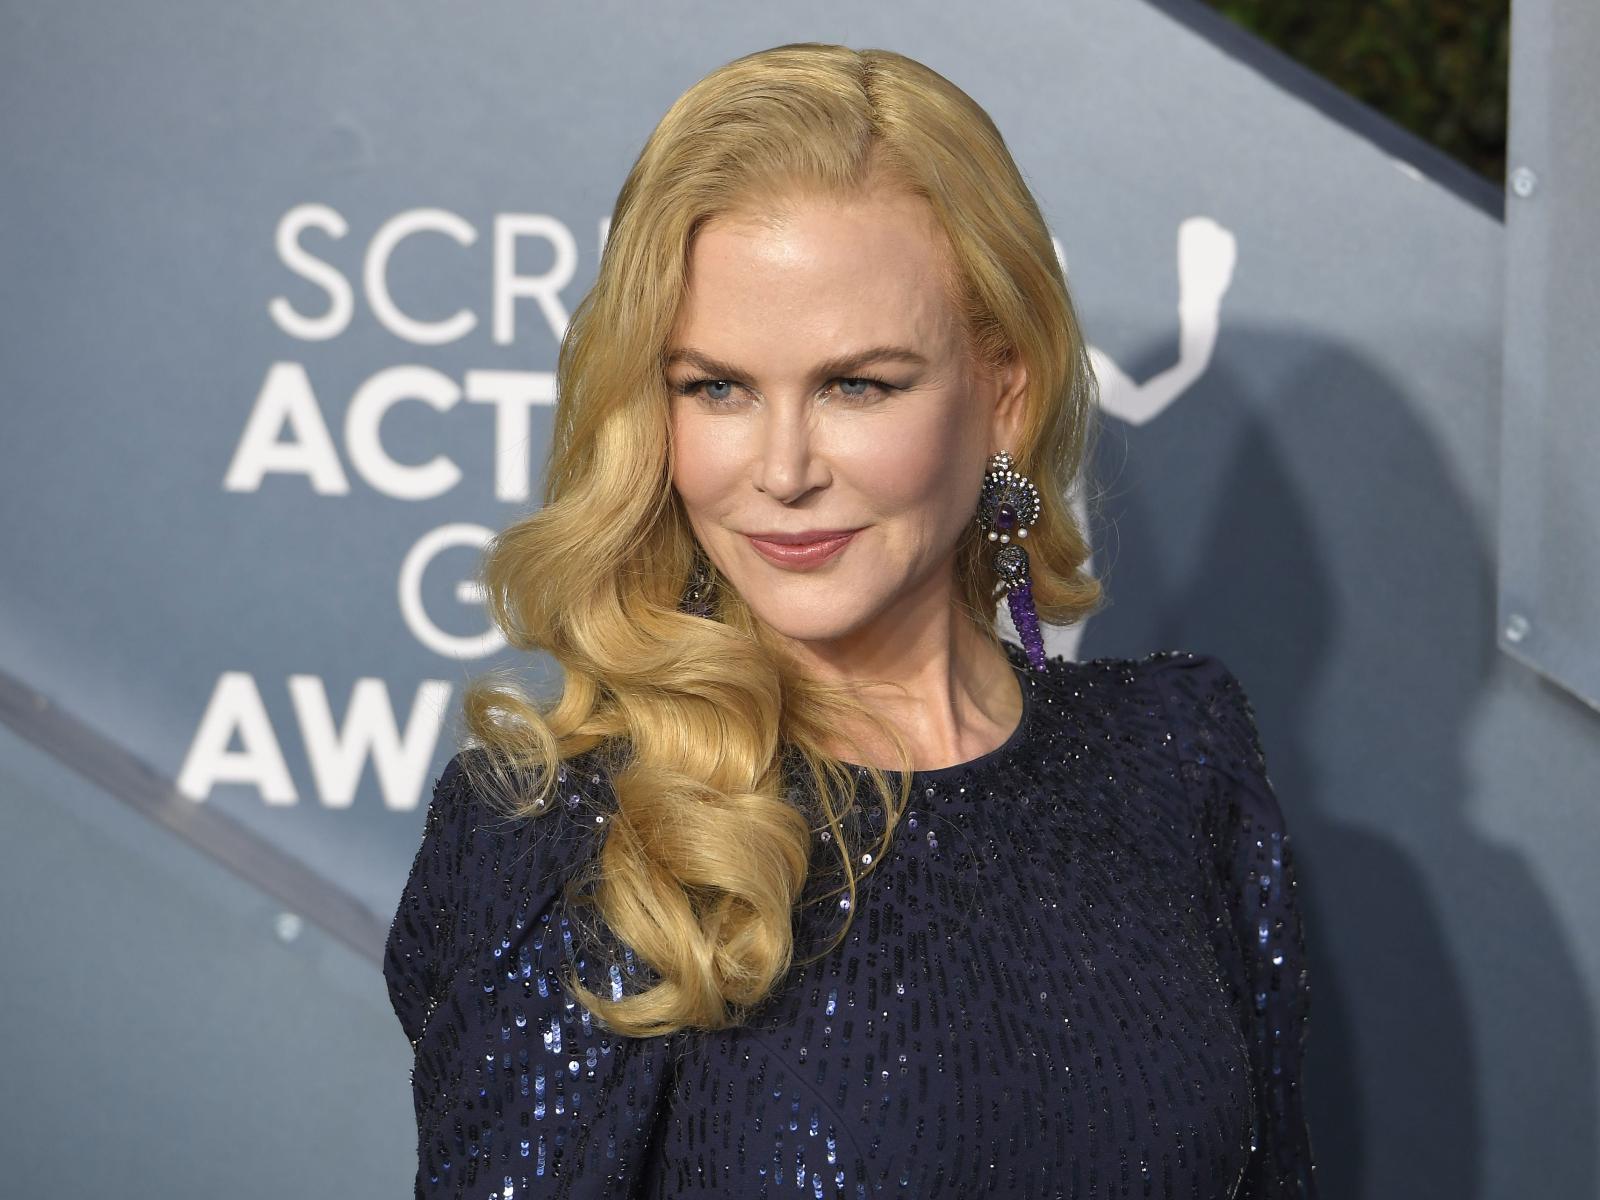 Abdomenul și talia lui Nicole Kidman la 53 de ani, după o naștere. Puține femei arată ca ea